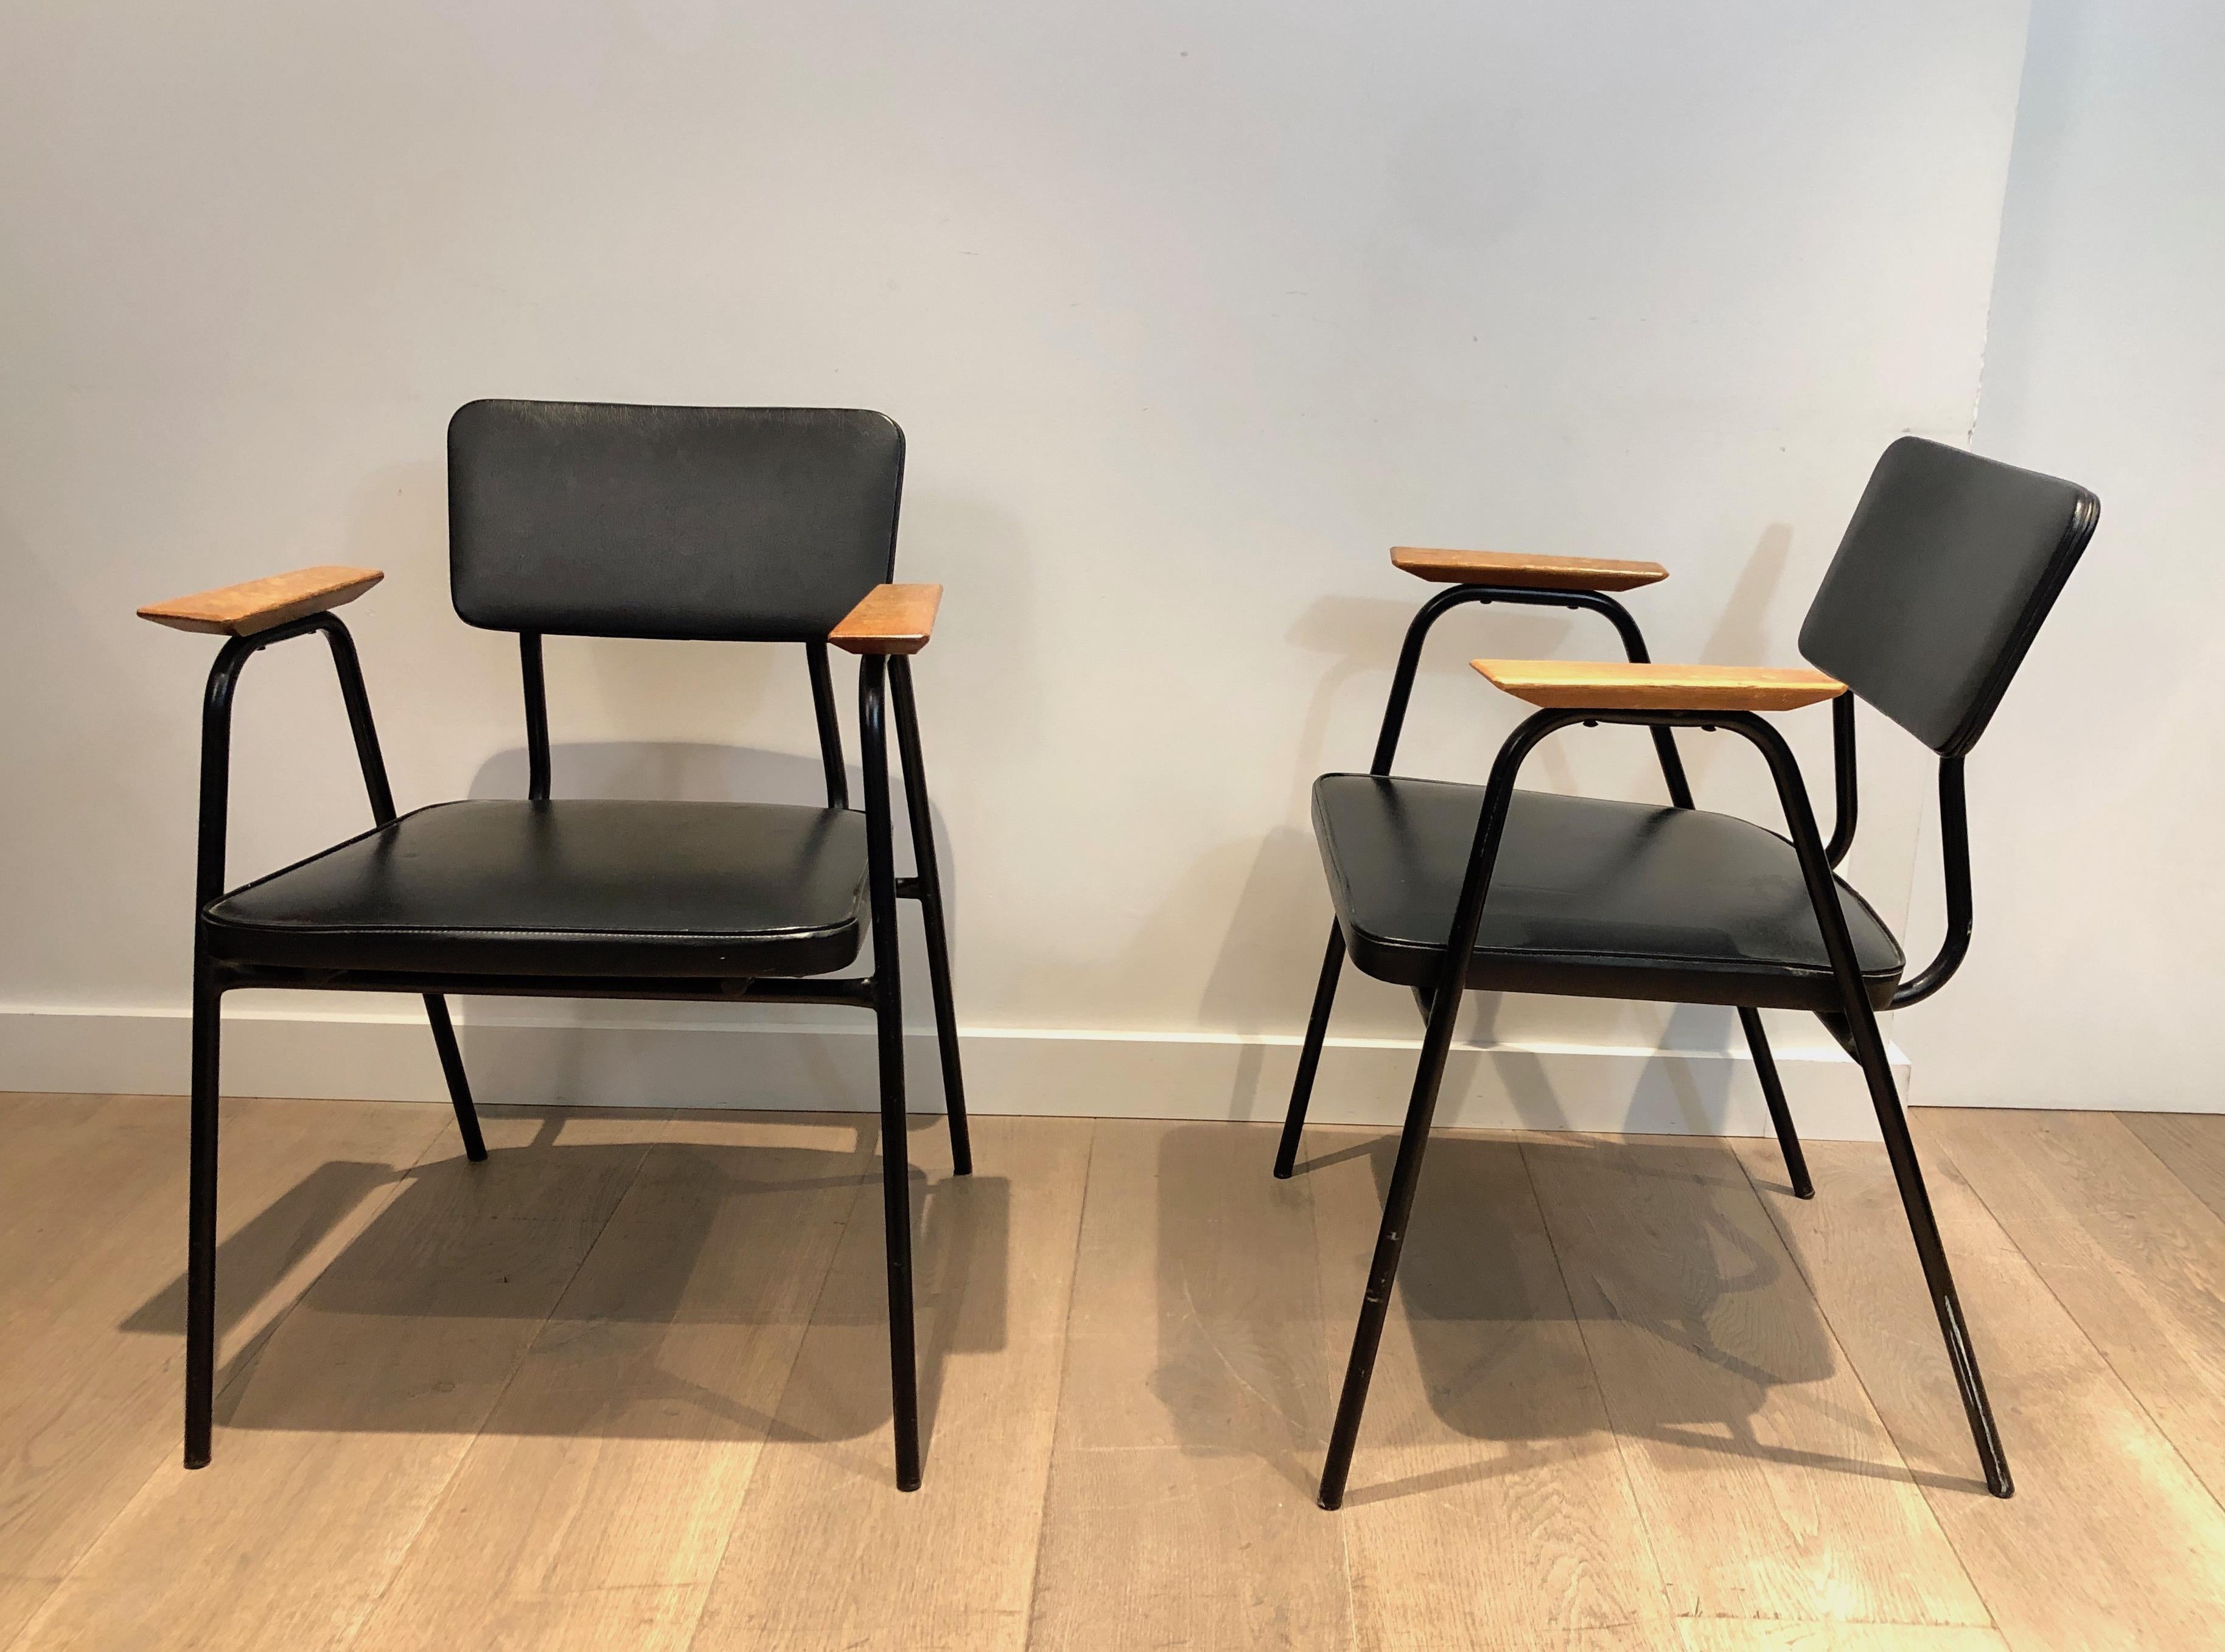 Dieses Sesselpaar ist aus schwarz lackiertem Metall und schwarzem Kunstleder mit Holzarmlehnen gefertigt. Dieses Werk wird dem berühmten belgischen Designer Willy Van der Meeren zugeschrieben, um 1950.